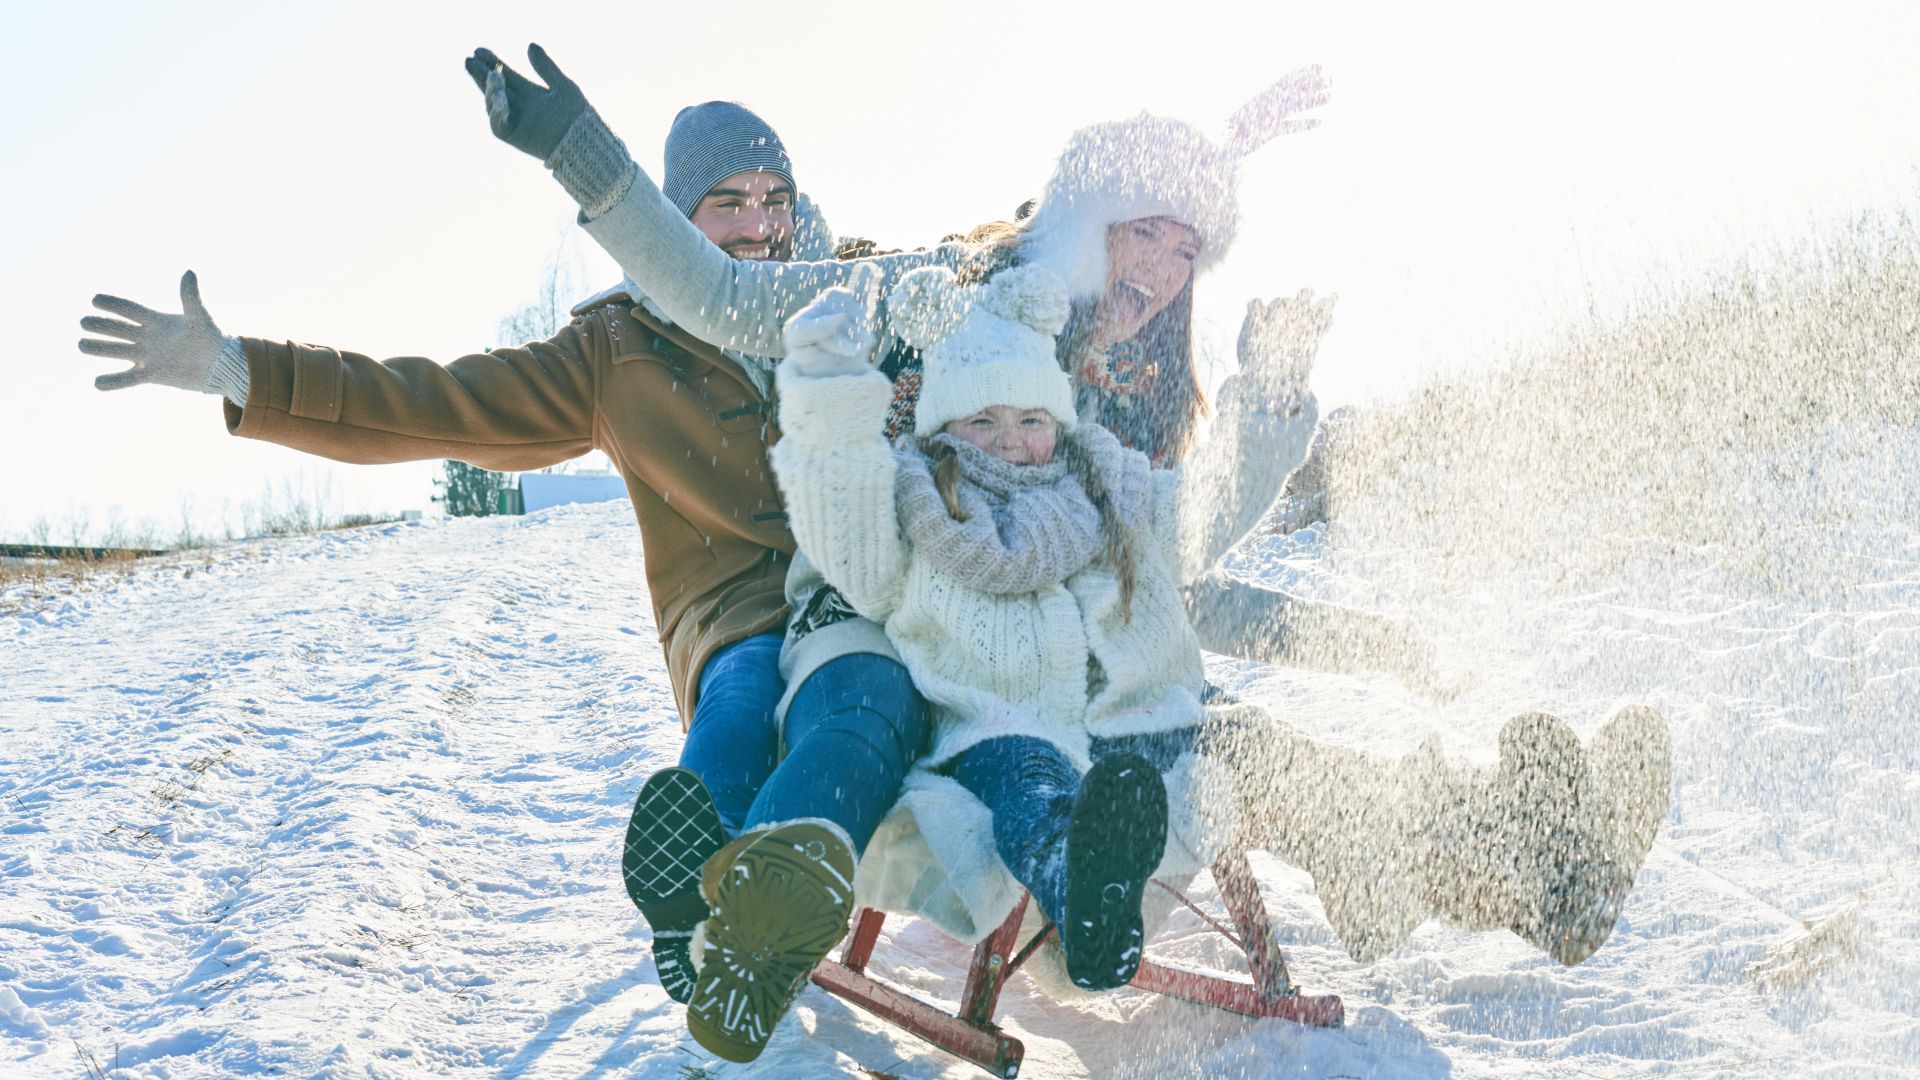 Wintervergnügen: Familie fährt Schlitten im Schnee